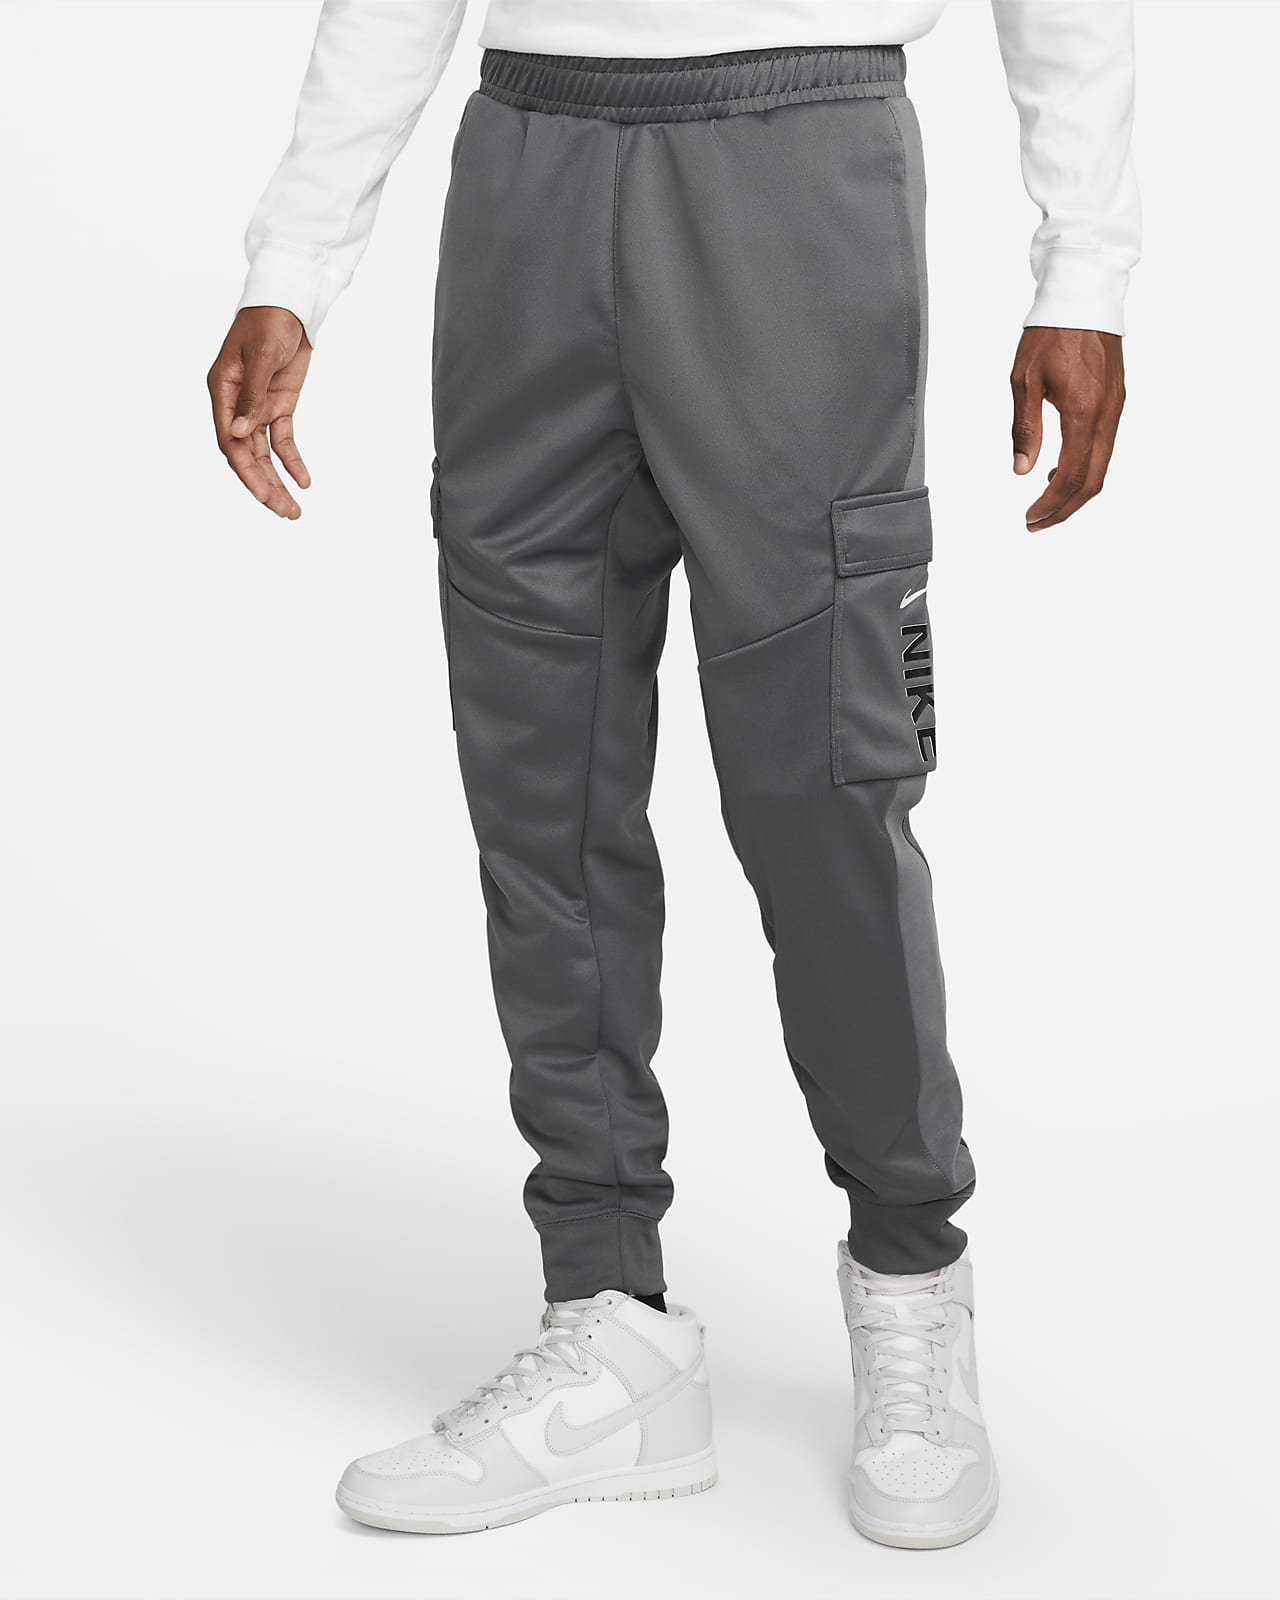 Pantalons de Jogging pour Homme en Promotion. Nike FR